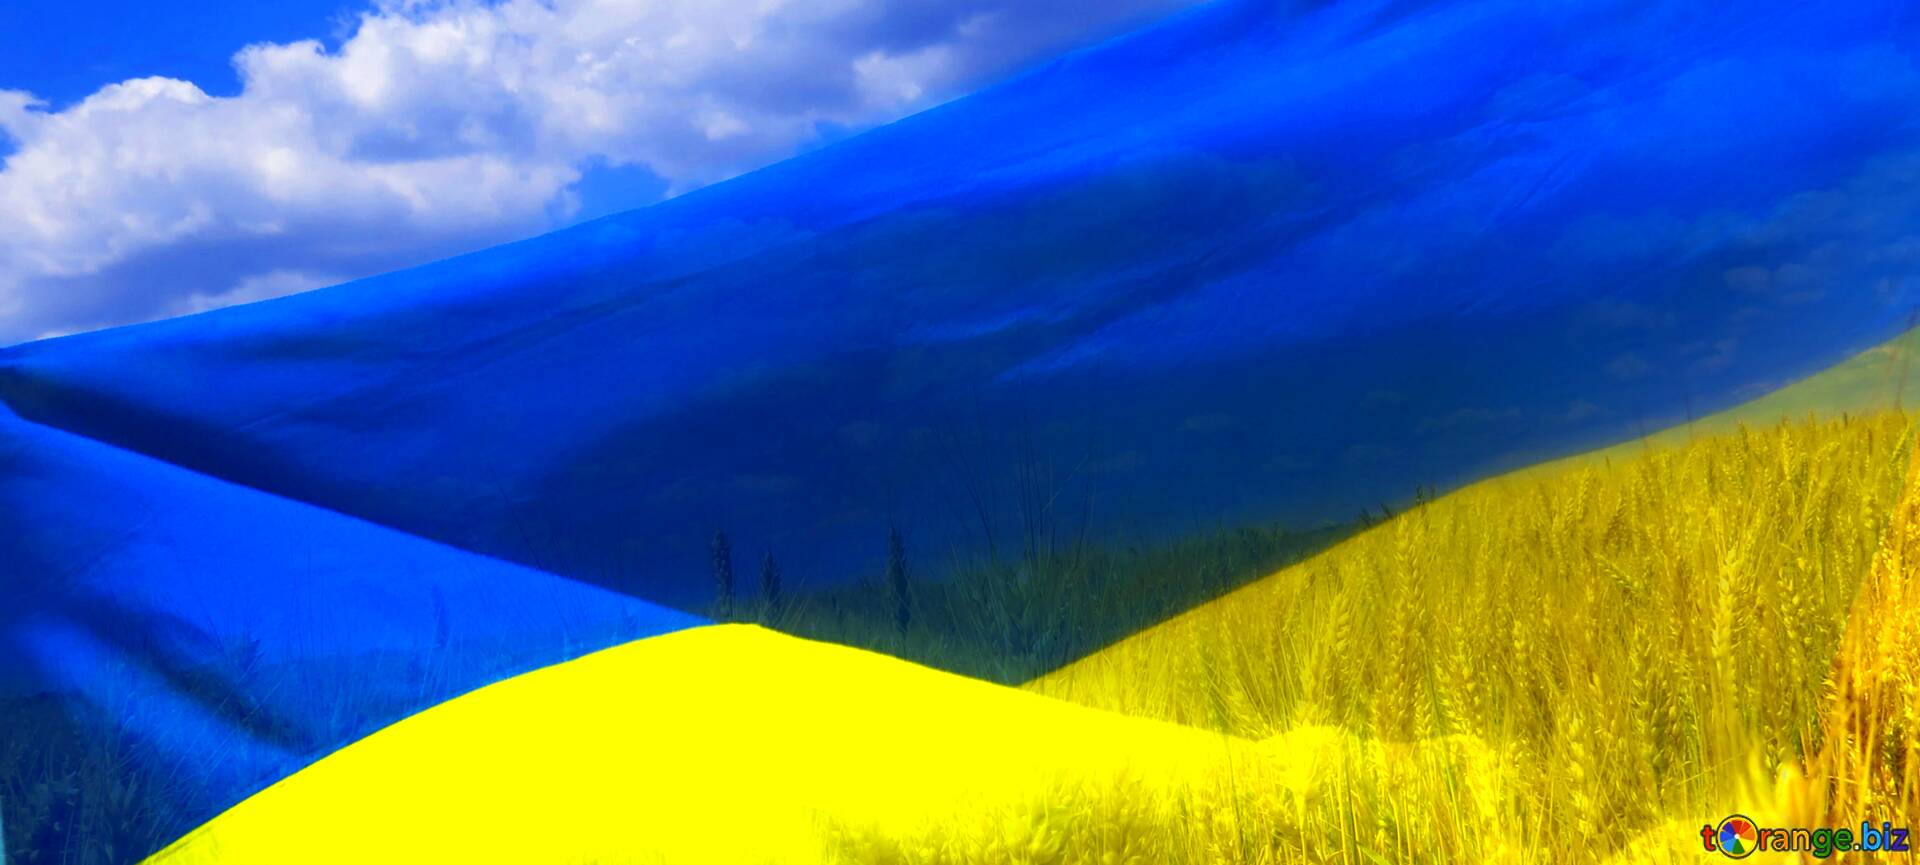 Download Free Picture Abdeckung Die Flagge Der Ukraine On Cc By License Free Image Stock Torange Biz Fx